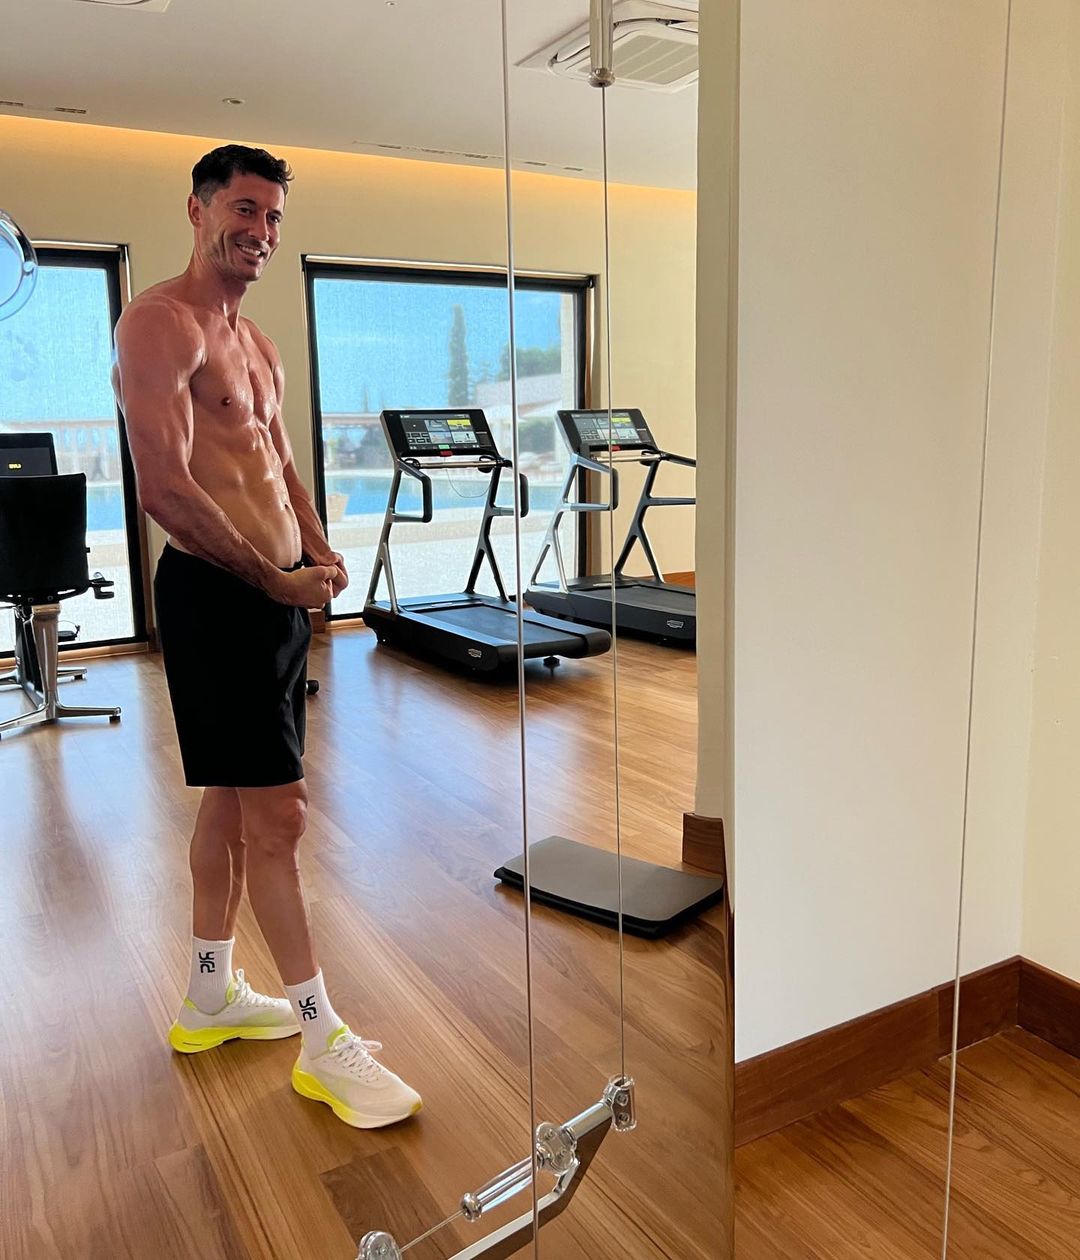 Robert Lewandowski muestra orgulloso su cuerpo entrenado. El polaco lleva adelante una dieta invertida que lo potencia dentro del campo (Instagram)